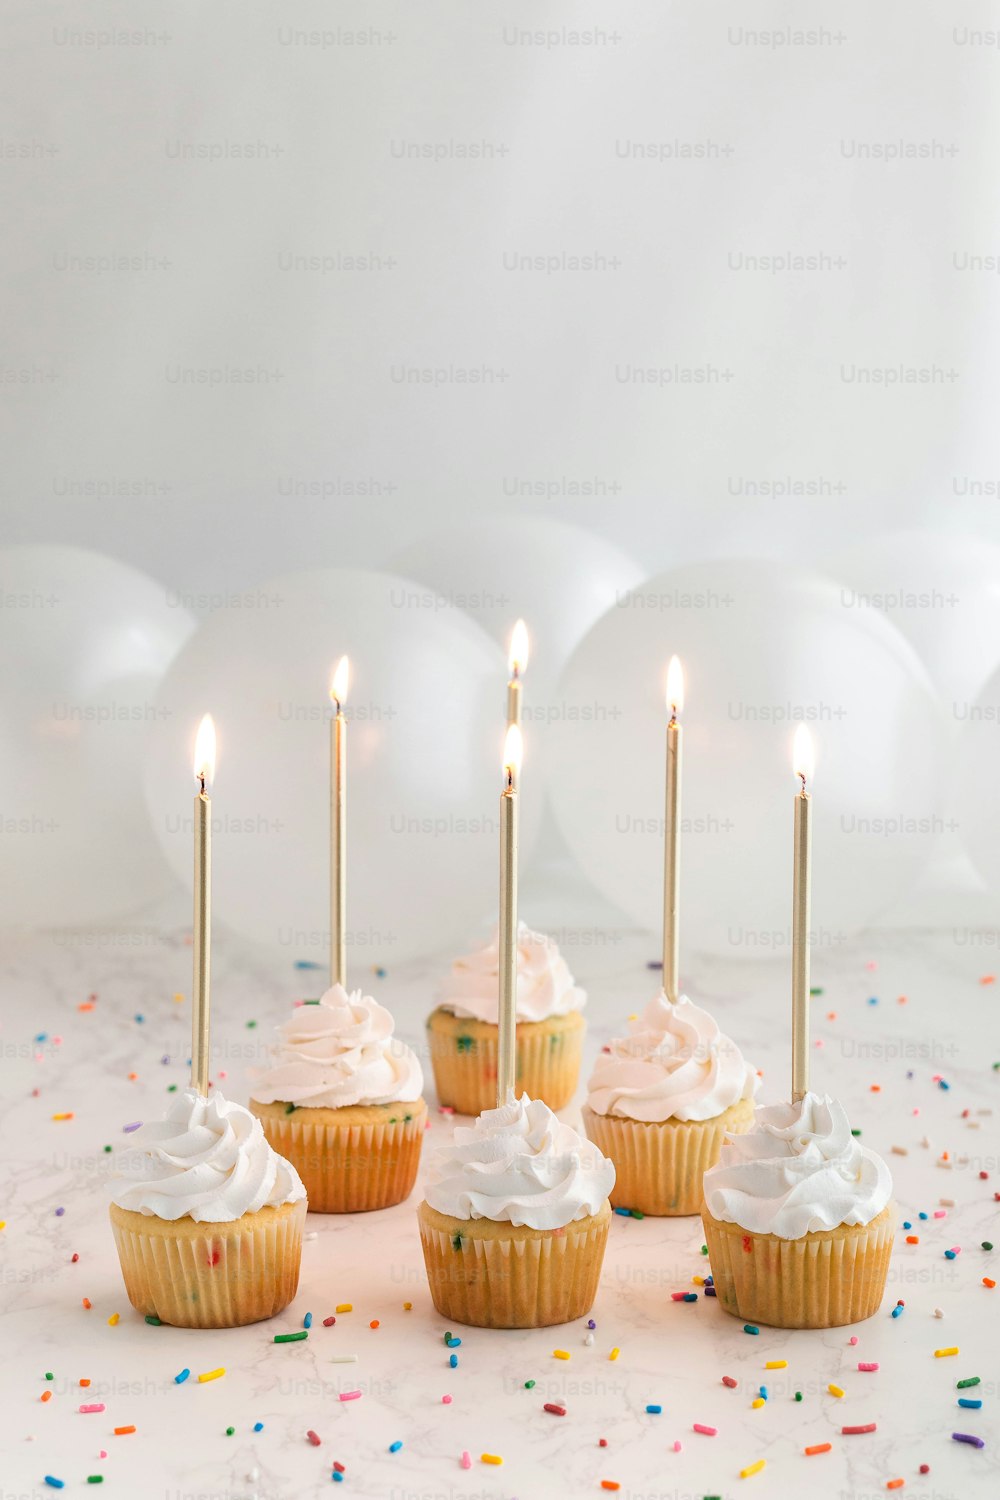 하얀 설탕을 입힌 컵케이크와 촛불을 켠 컵케이크 그룹